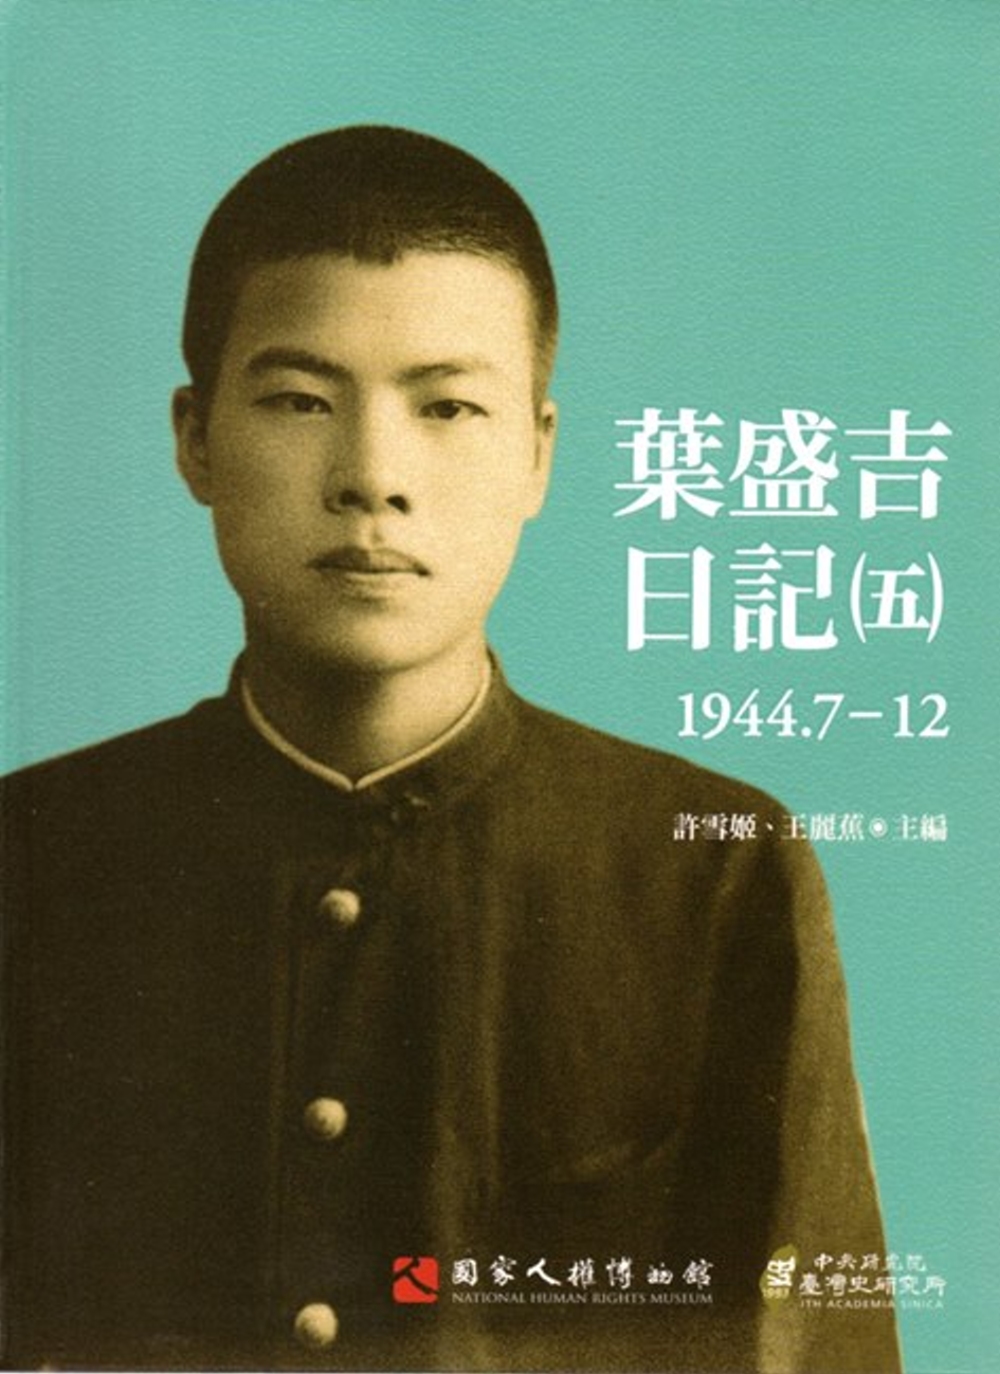 葉盛吉日記(五)1944.7-12